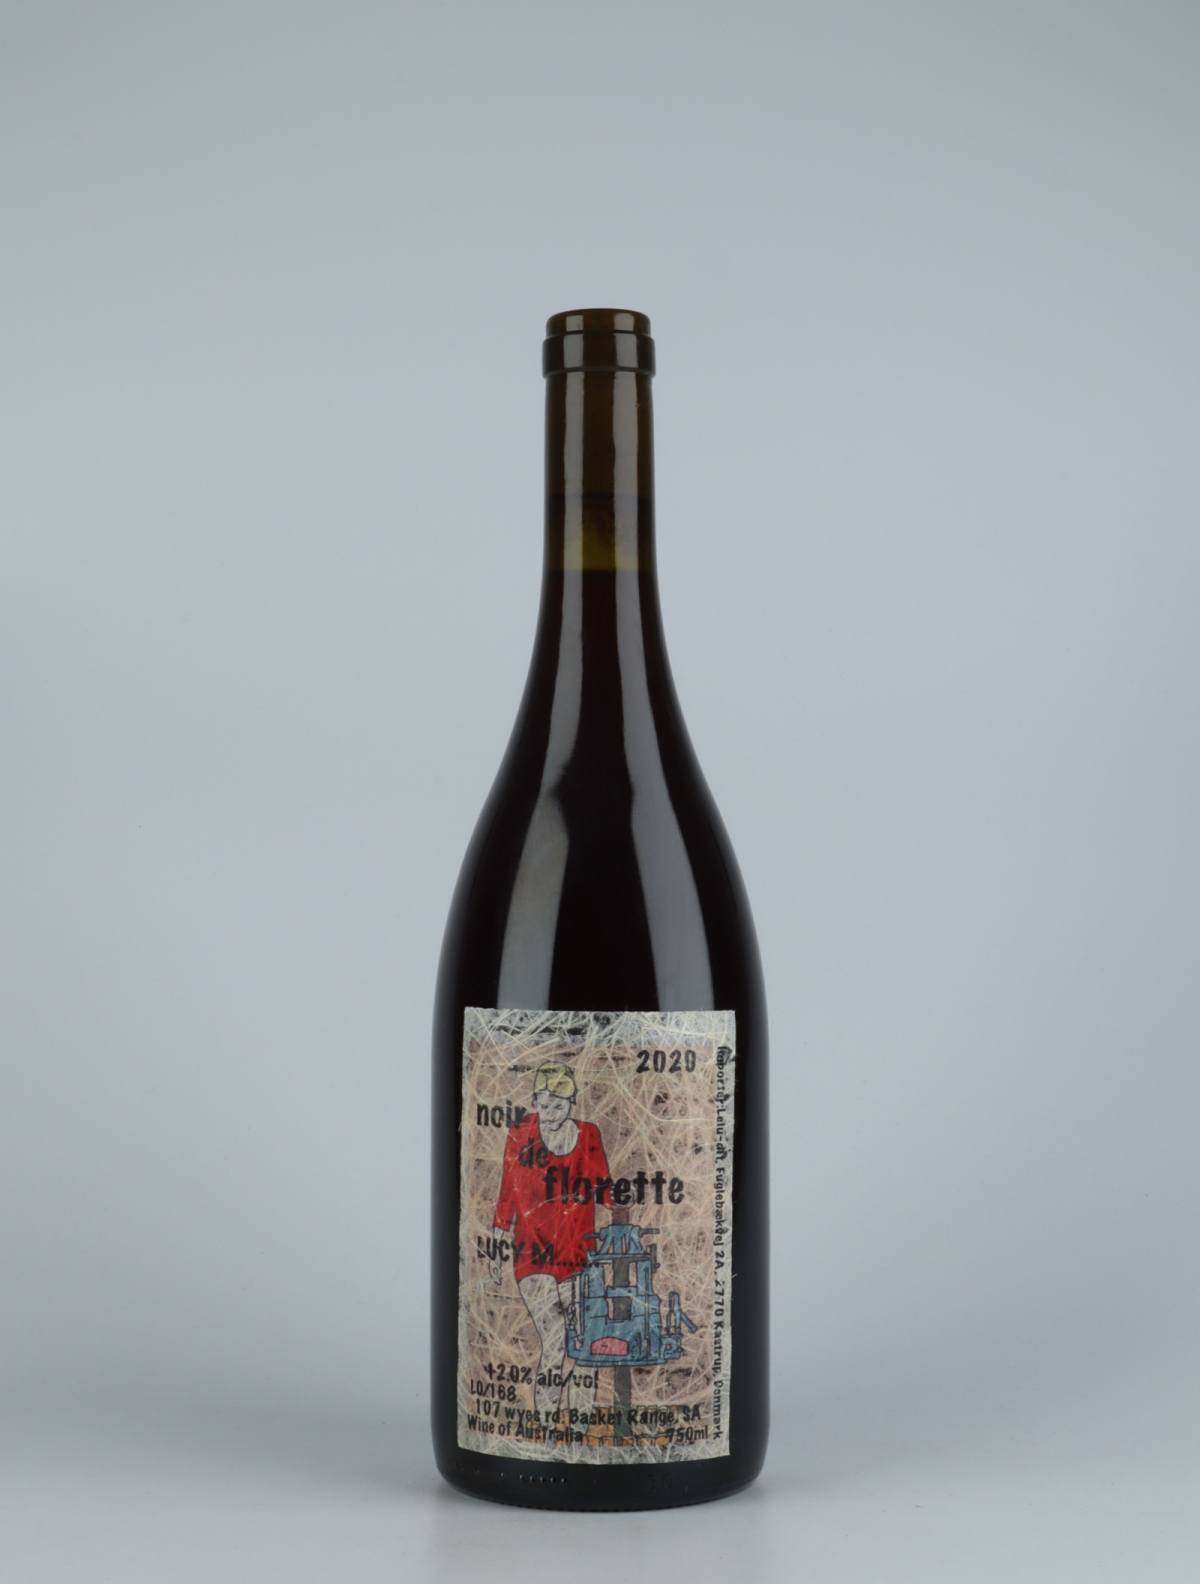 En flaske 2020 Noir de Florette Rødvin fra Lucy Margaux, Adelaide Hills i Australien